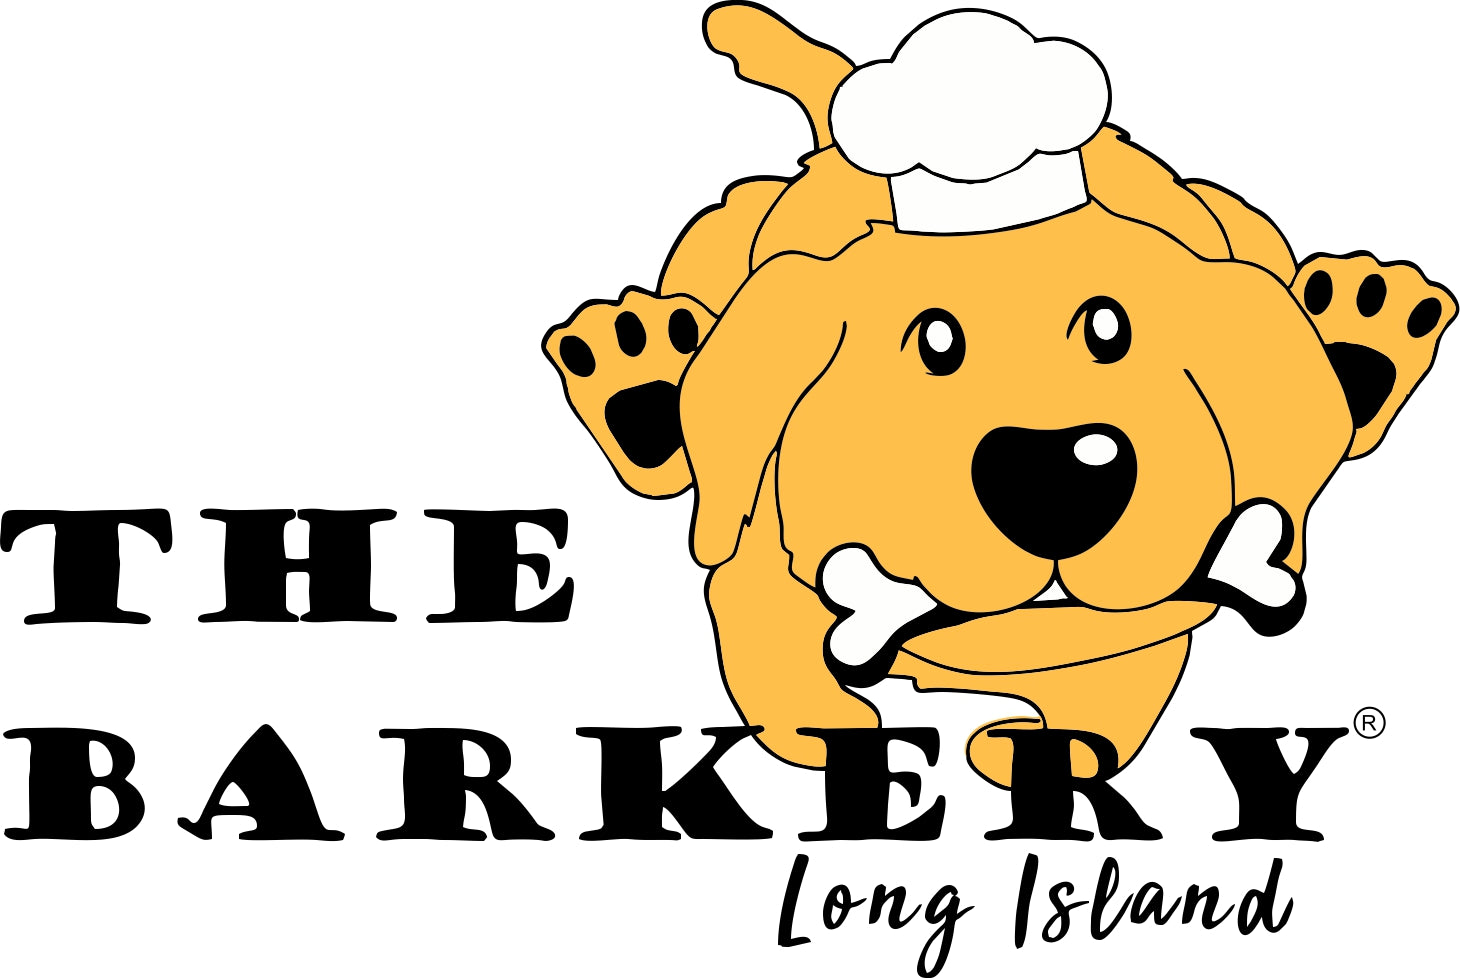 NY Rangers Dog Jersey – The Barkery Long Island